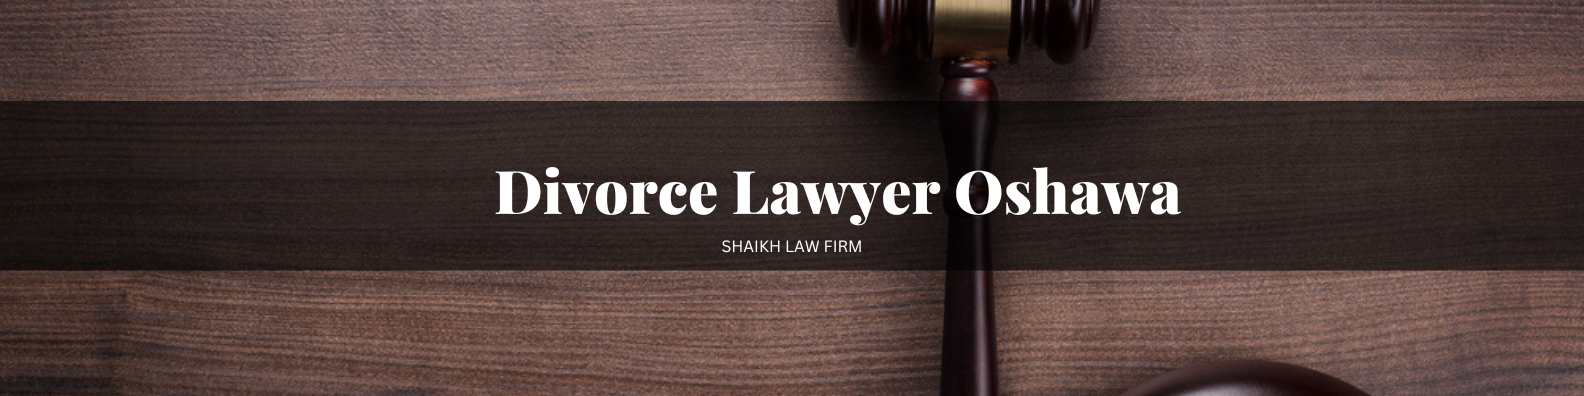 Divorce Lawyer Oshawa